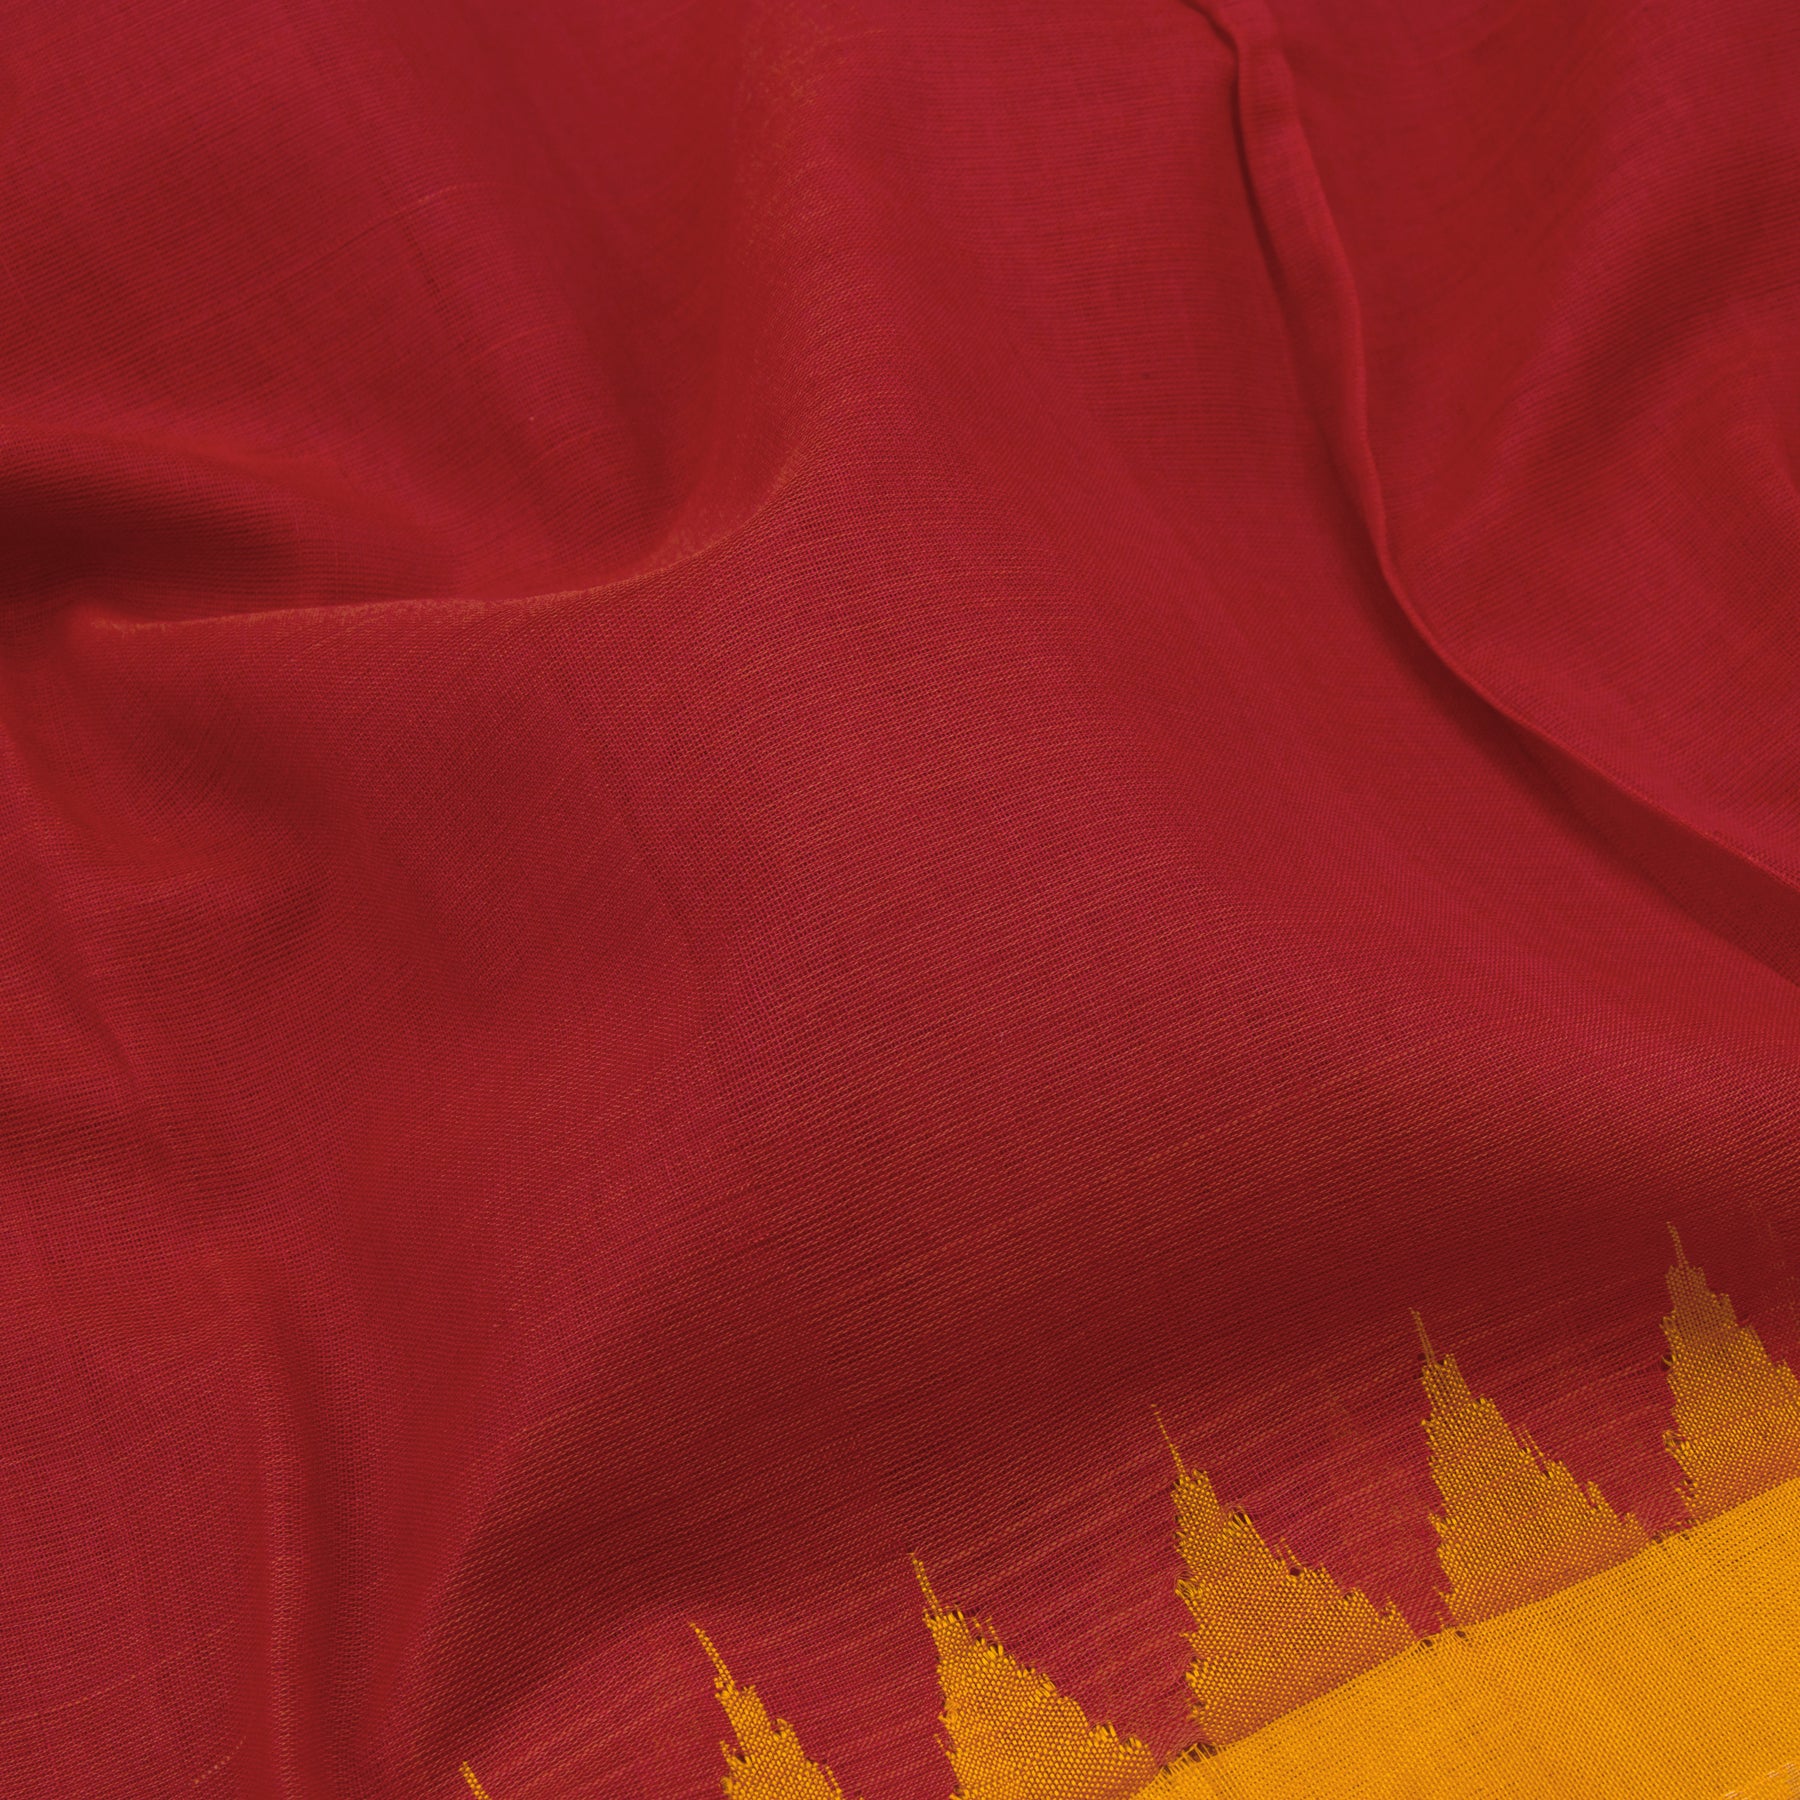 Kanakavalli Gadwal Silk/Cotton Sari 21-604-HS005-02312 - Fabric View